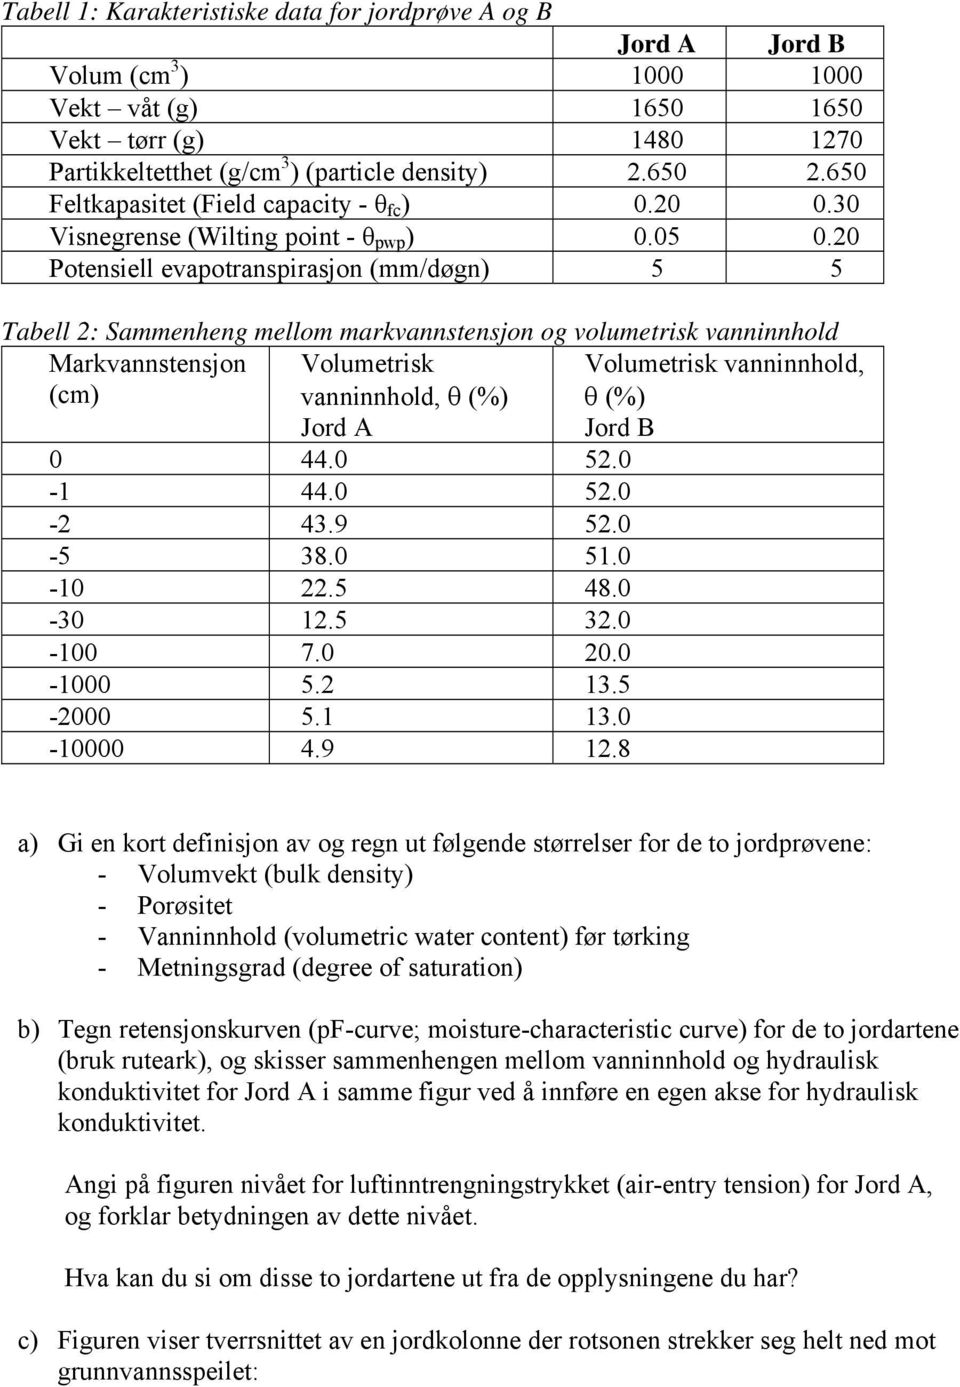 20 Potensiell evapotranspirasjon (mm/døgn) 5 5 Tabell 2: Sammenheng mellom markvannstensjon og volumetrisk vanninnhold Markvannstensjon Volumetrisk (cm) vanninnhold, θ (%) Jord A 0 44.0 52.0-1 44.